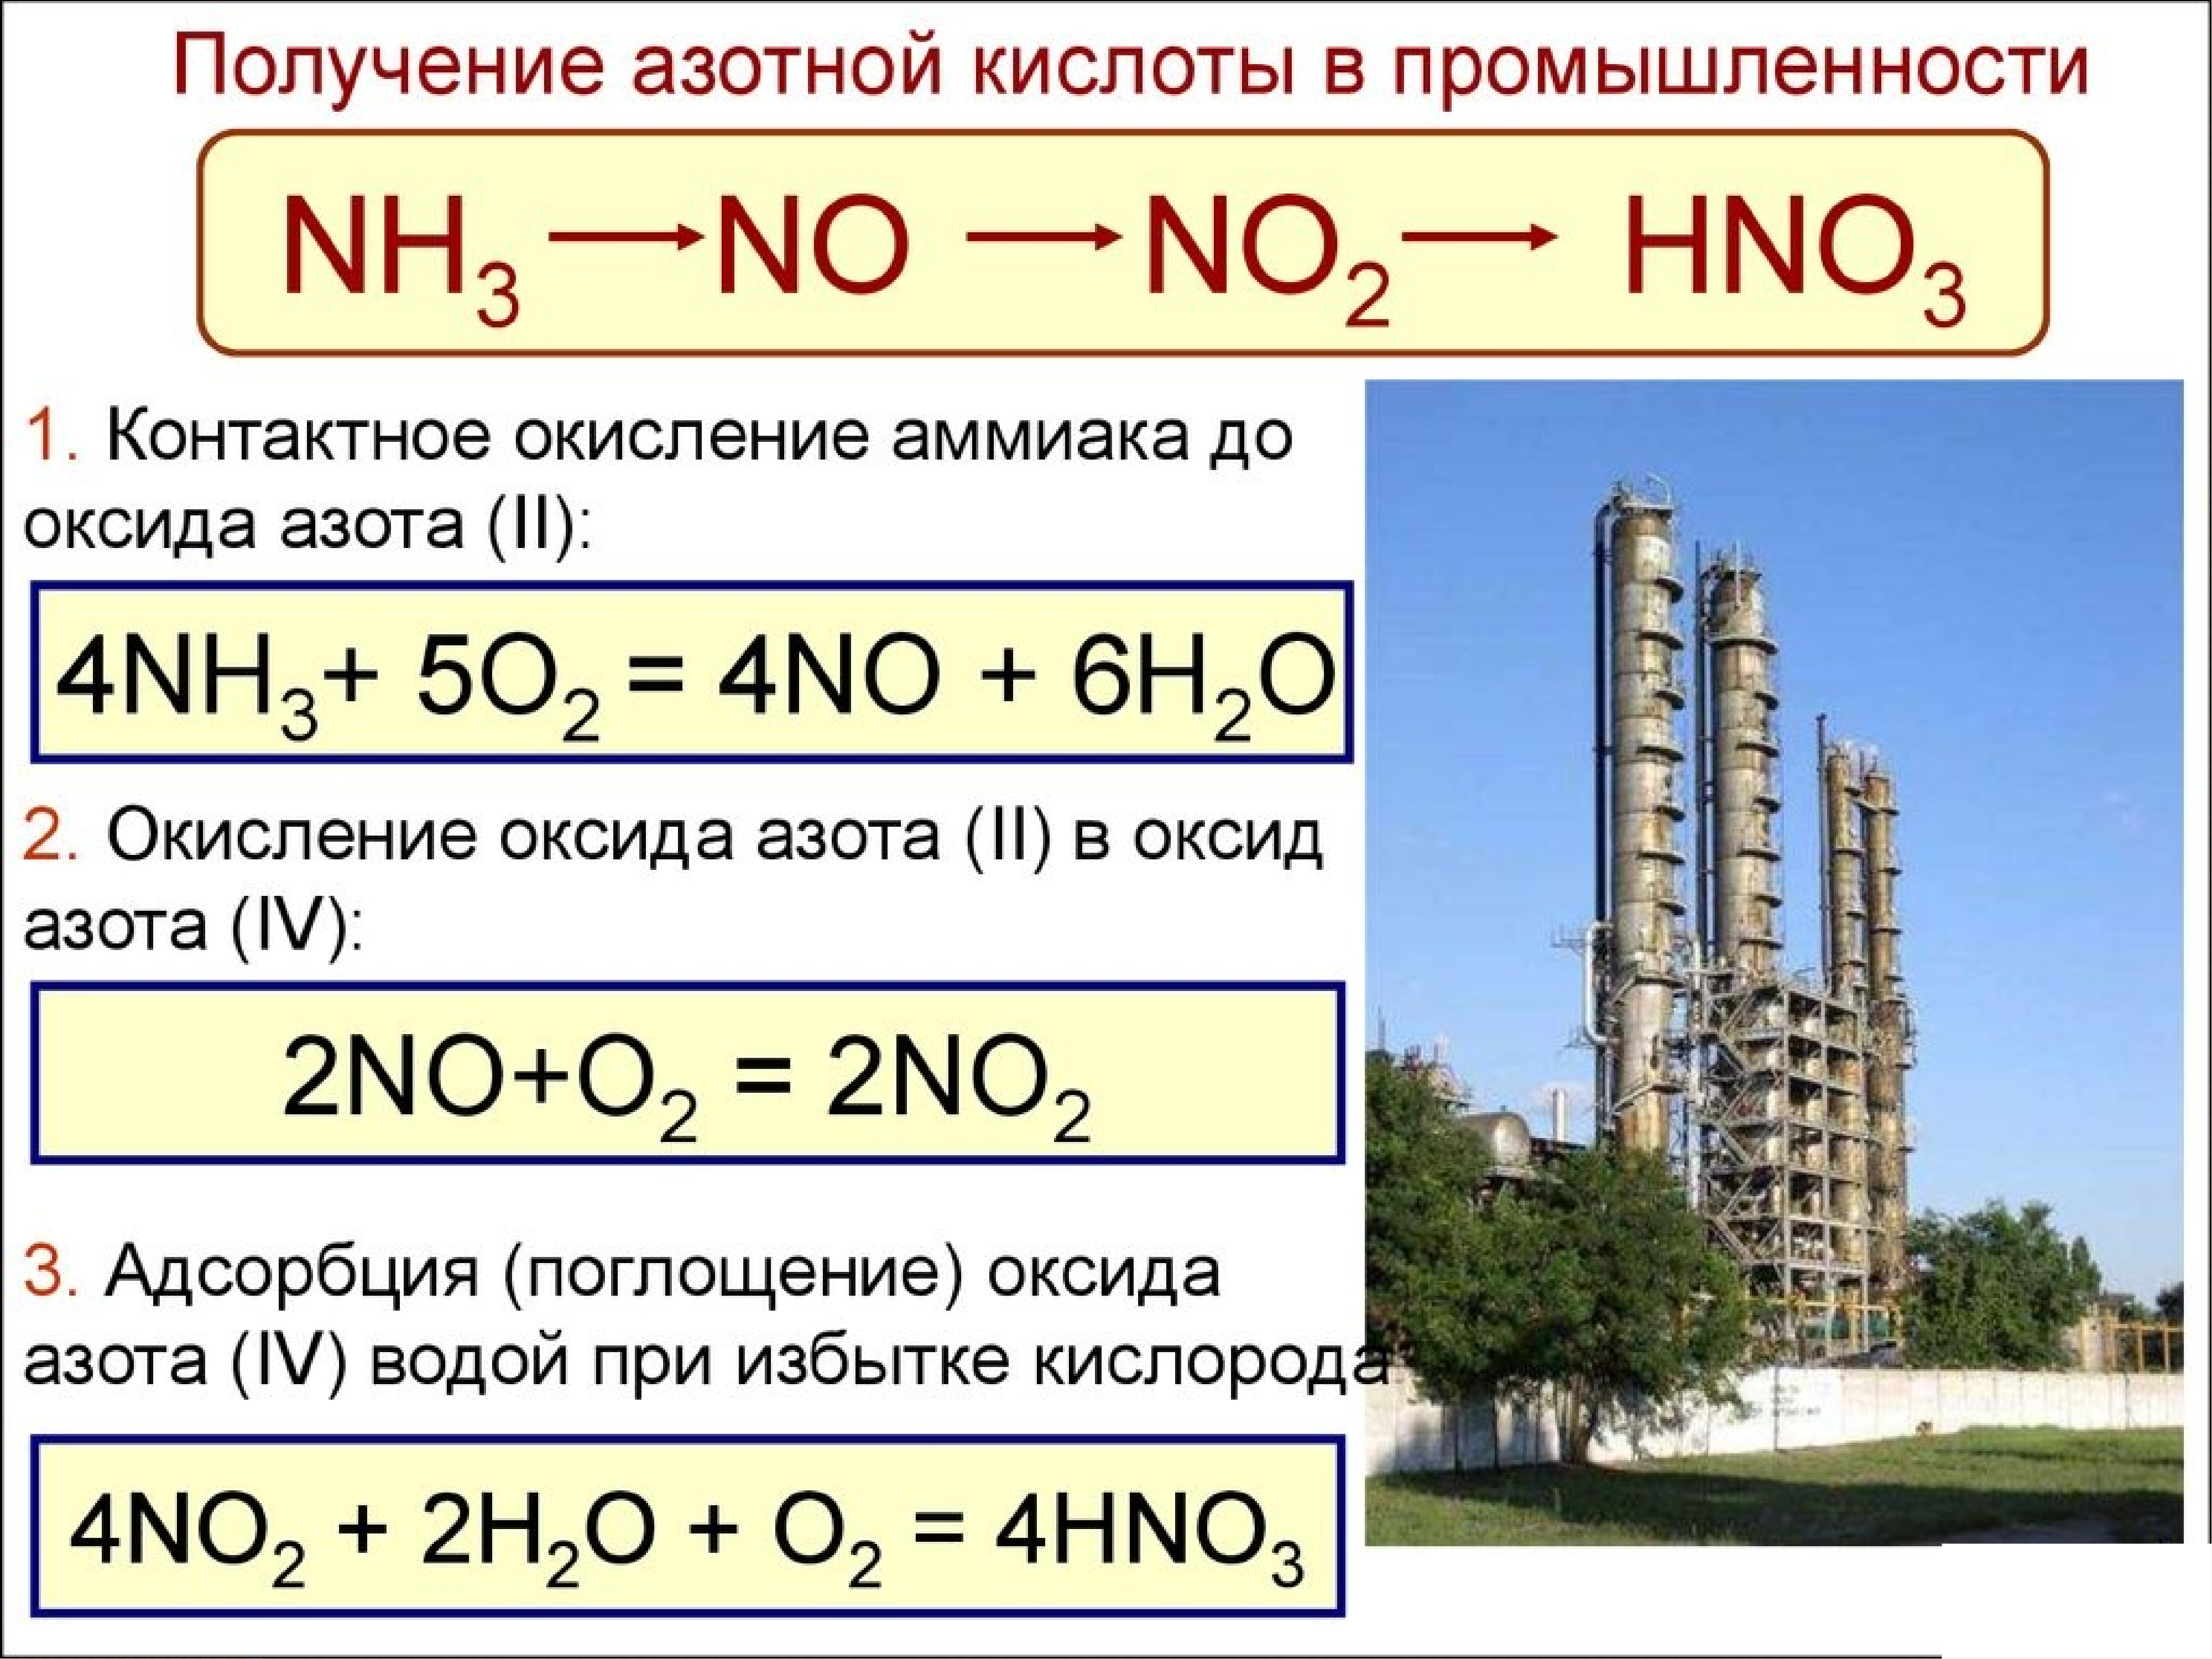 Оксид азота 1 и вода реакция. Получение азотной кислоты из аммиака. Как из аммиака получить оксид азота 2. Как из аммиака получить азотную кислоту. Получение азотной кислоты из no2.